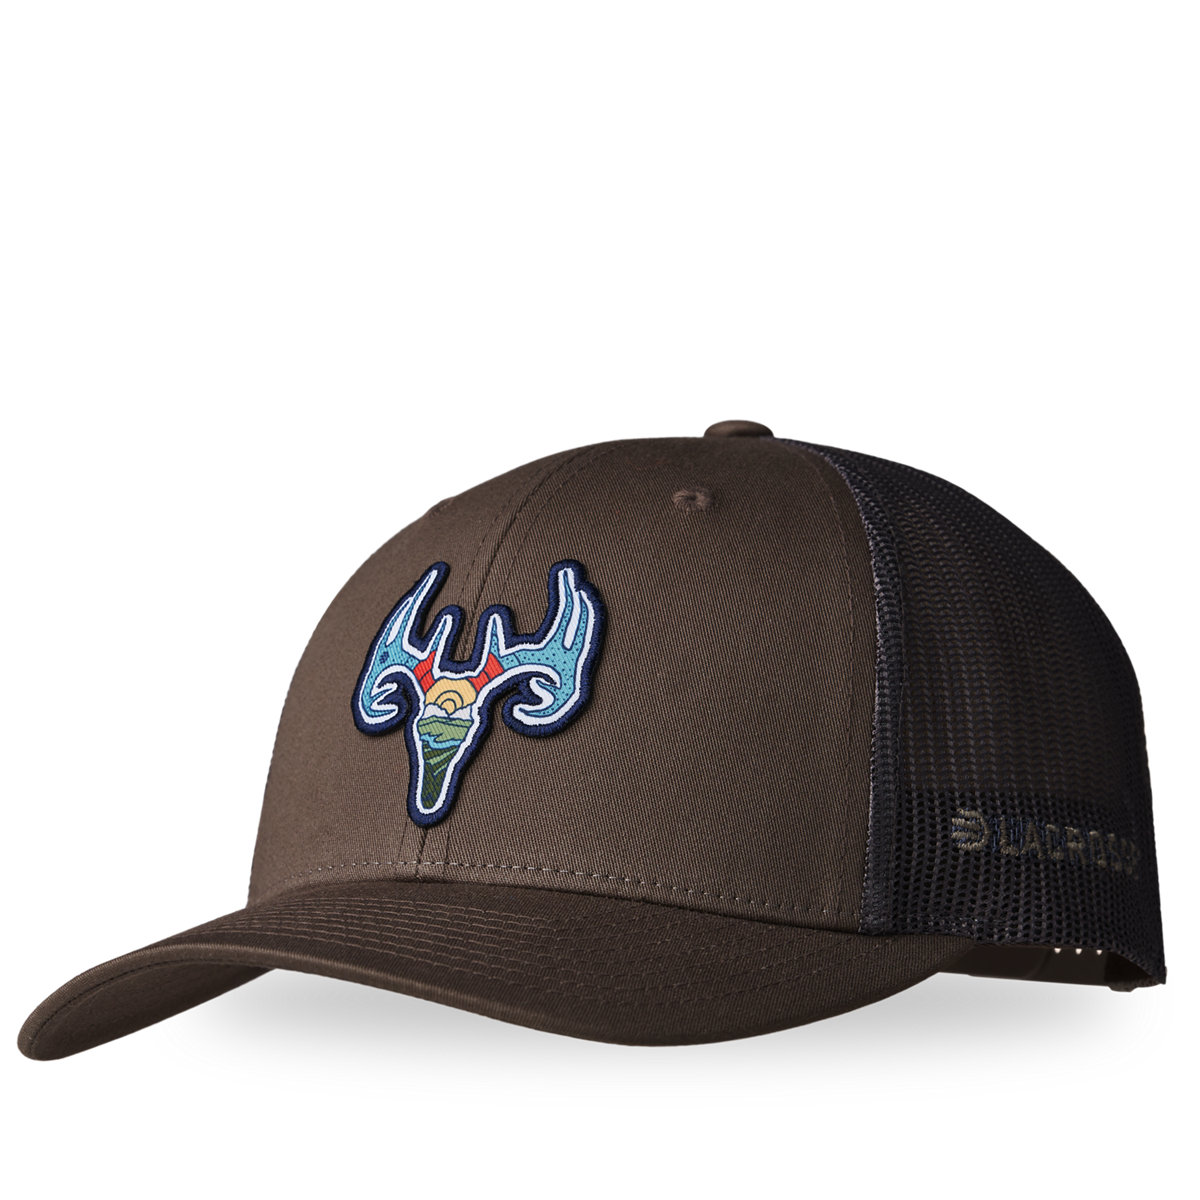 LaCrosse Footwear Brown Chip/Grey Deer - Choc Hat - LaCrosse Trucker